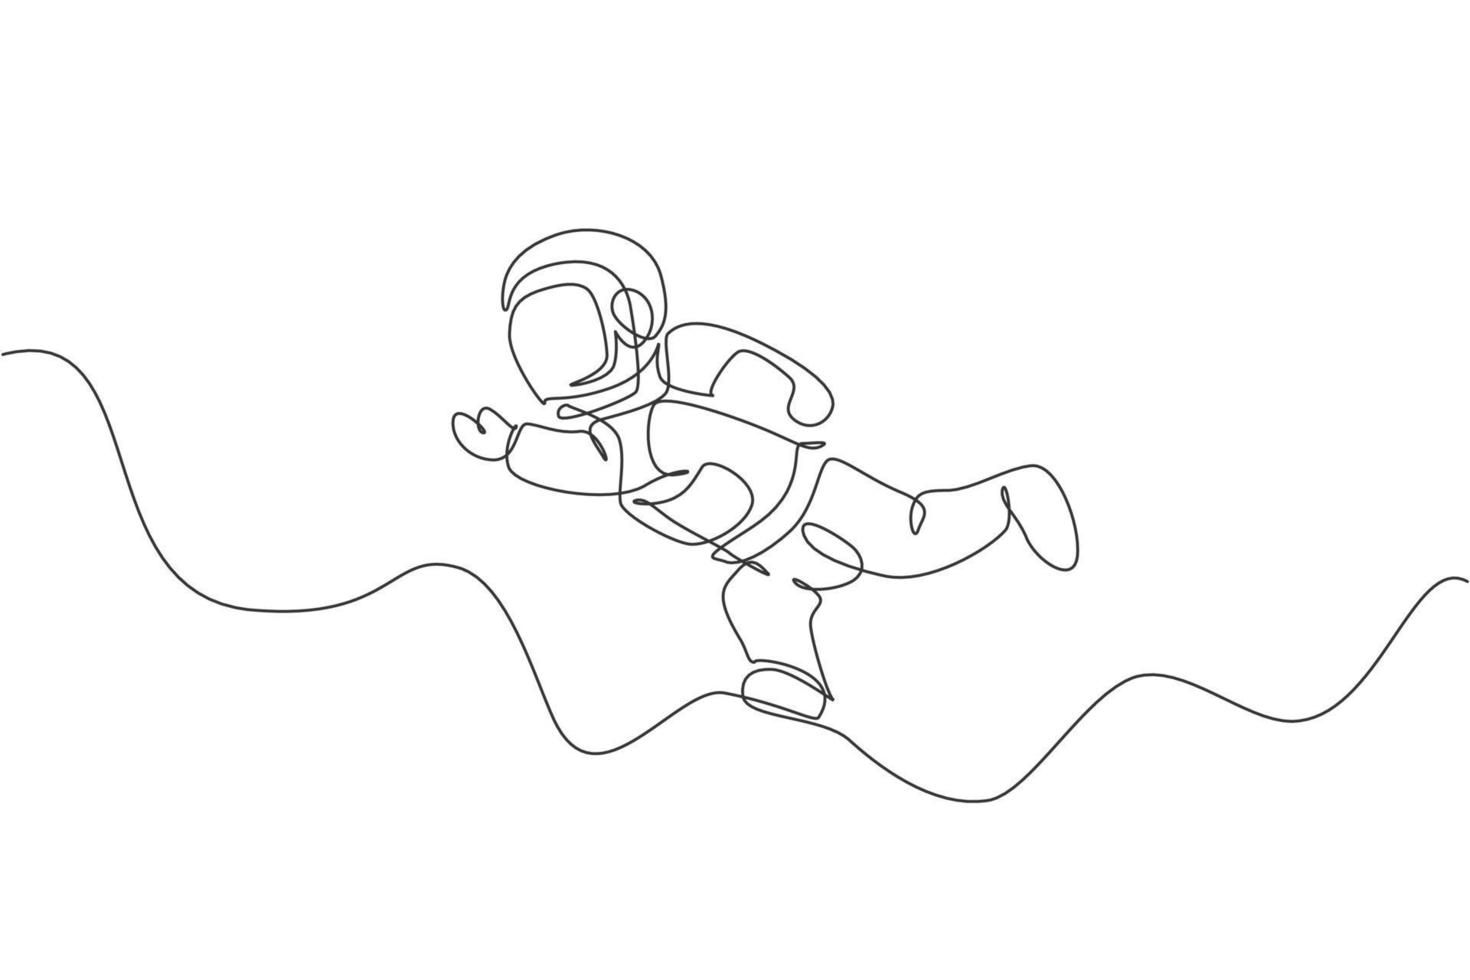 Un dibujo de una sola línea de un joven astronauta en traje espacial volando en la ilustración gráfica del vector del espacio exterior. concepto de espacio galáctico de aventura de astronauta. diseño moderno de dibujo de línea continua